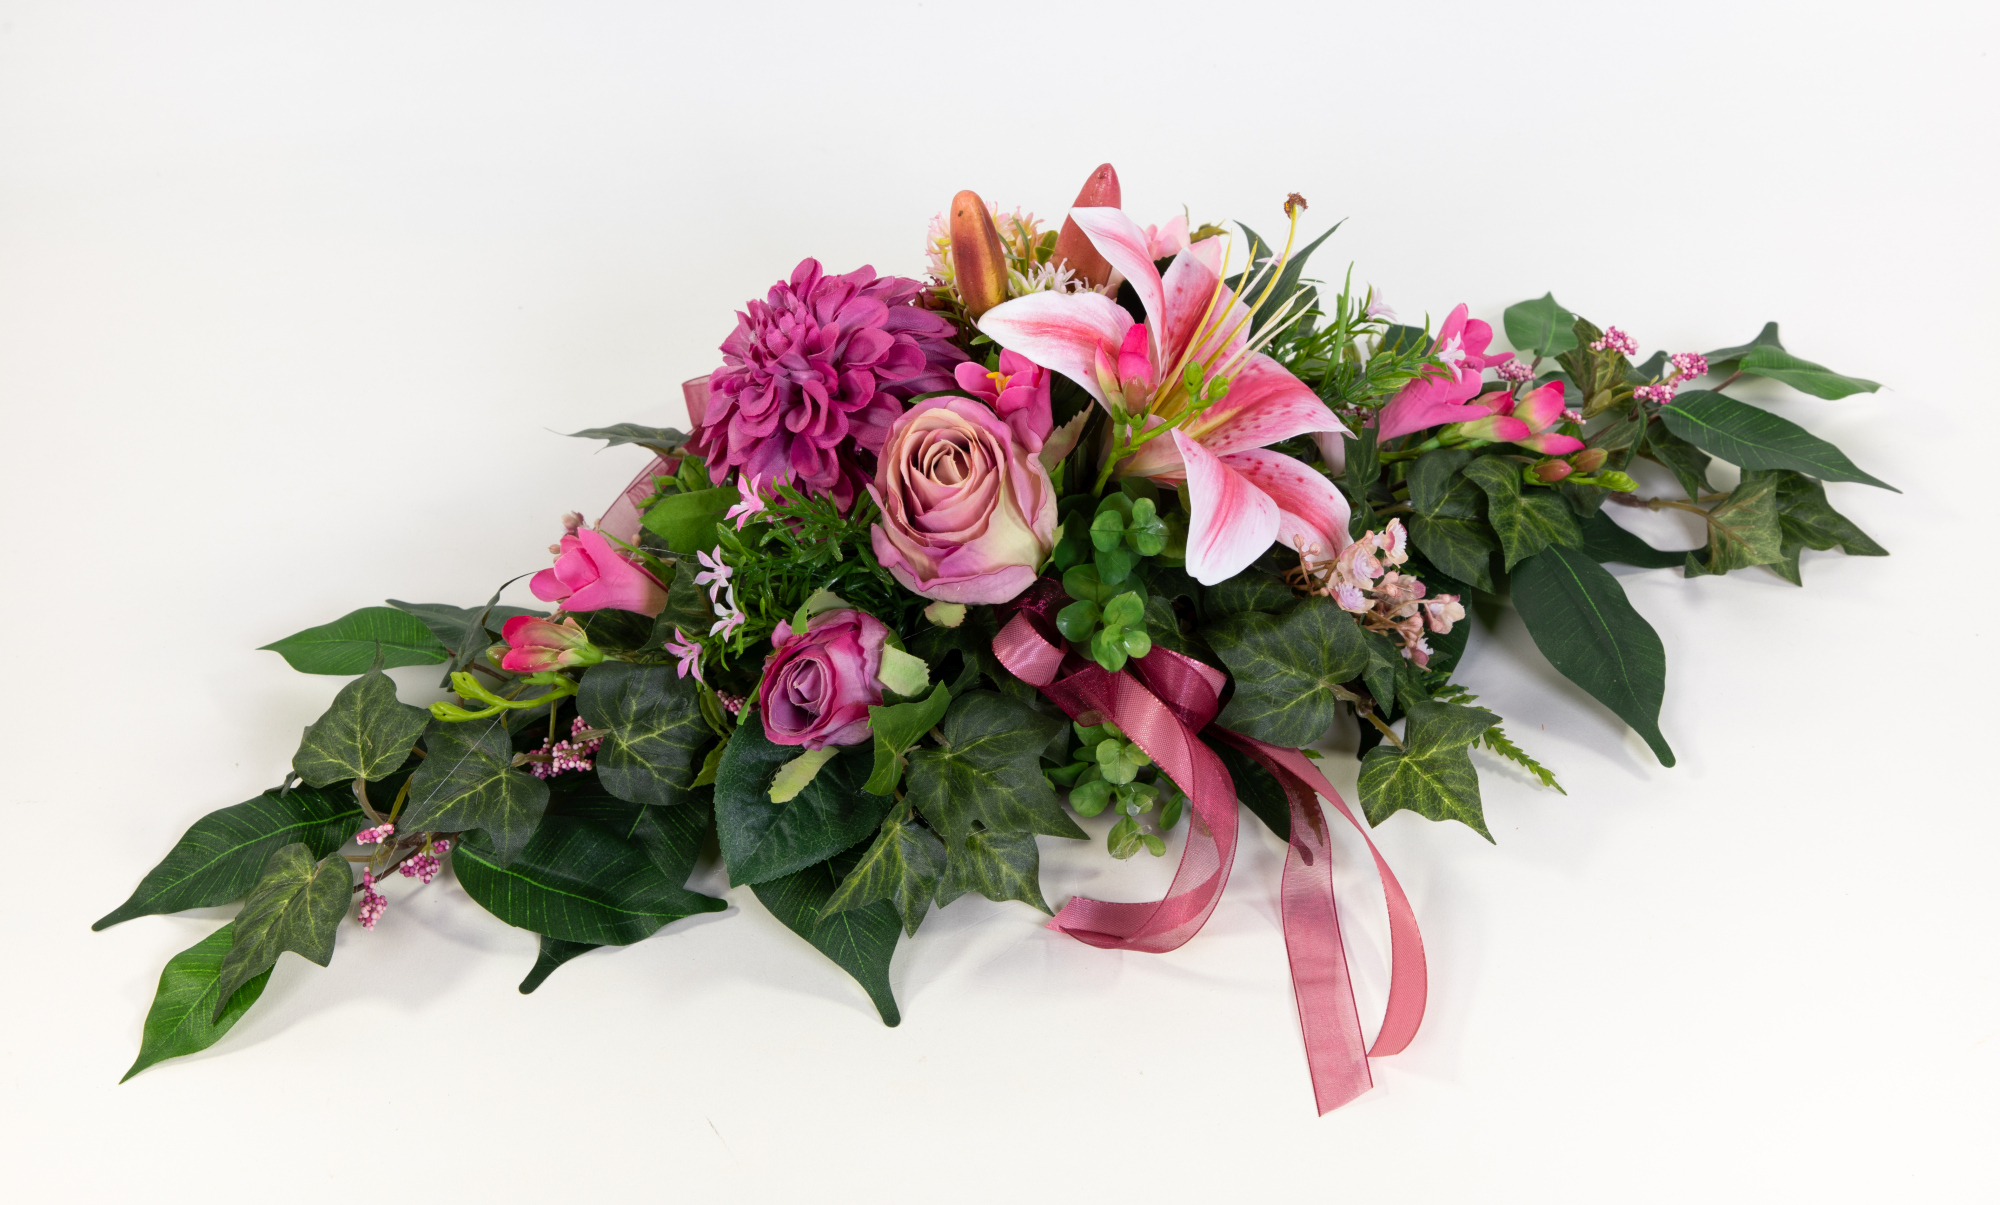 Tischgesteck länglich 60cm rosa-pink mit Rose Lilie und Chrysantheme Kunstblumen künstliche Blumen